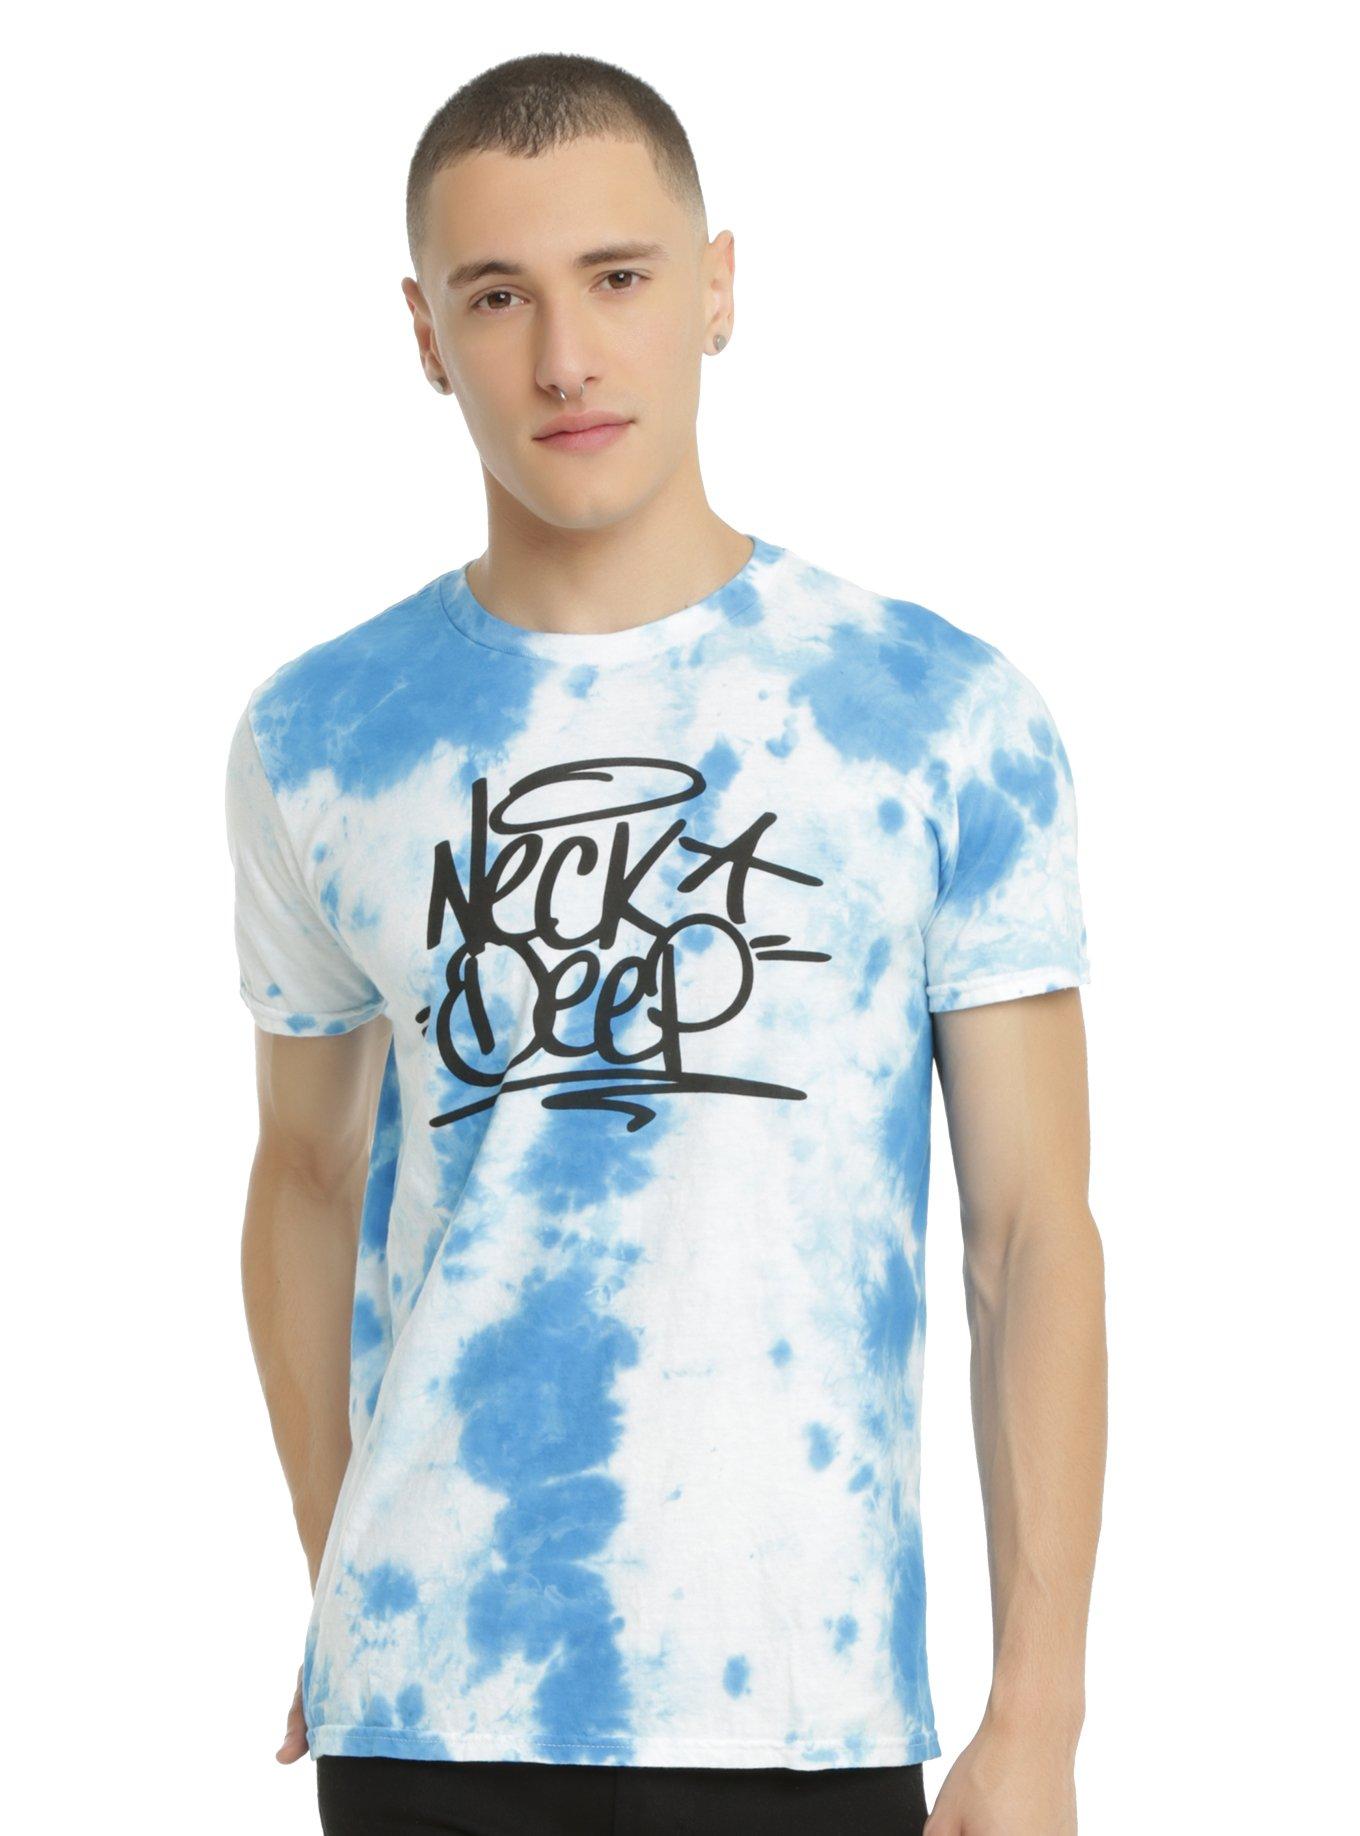 Neck Deep Grafitti Logo Tie Dye T-Shirt, TIE DYE, hi-res